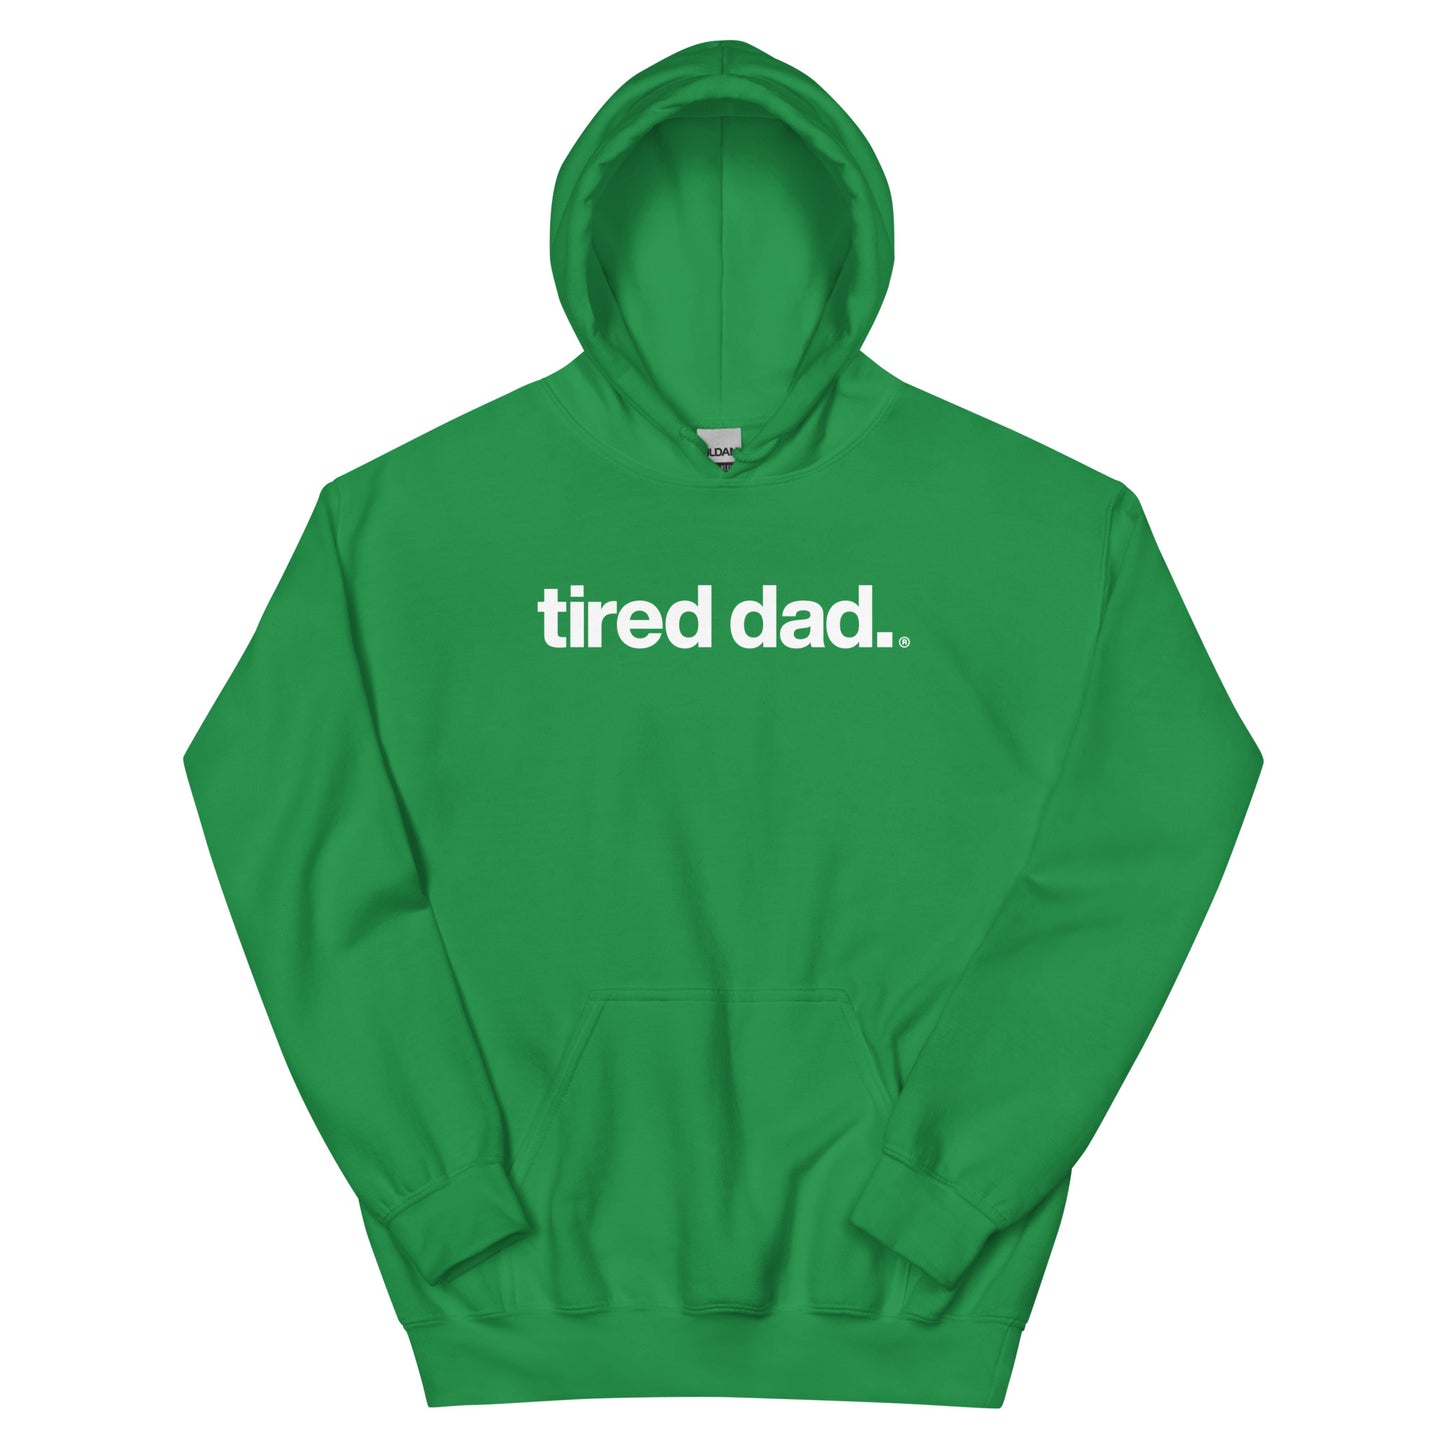 tired dad. hoodie